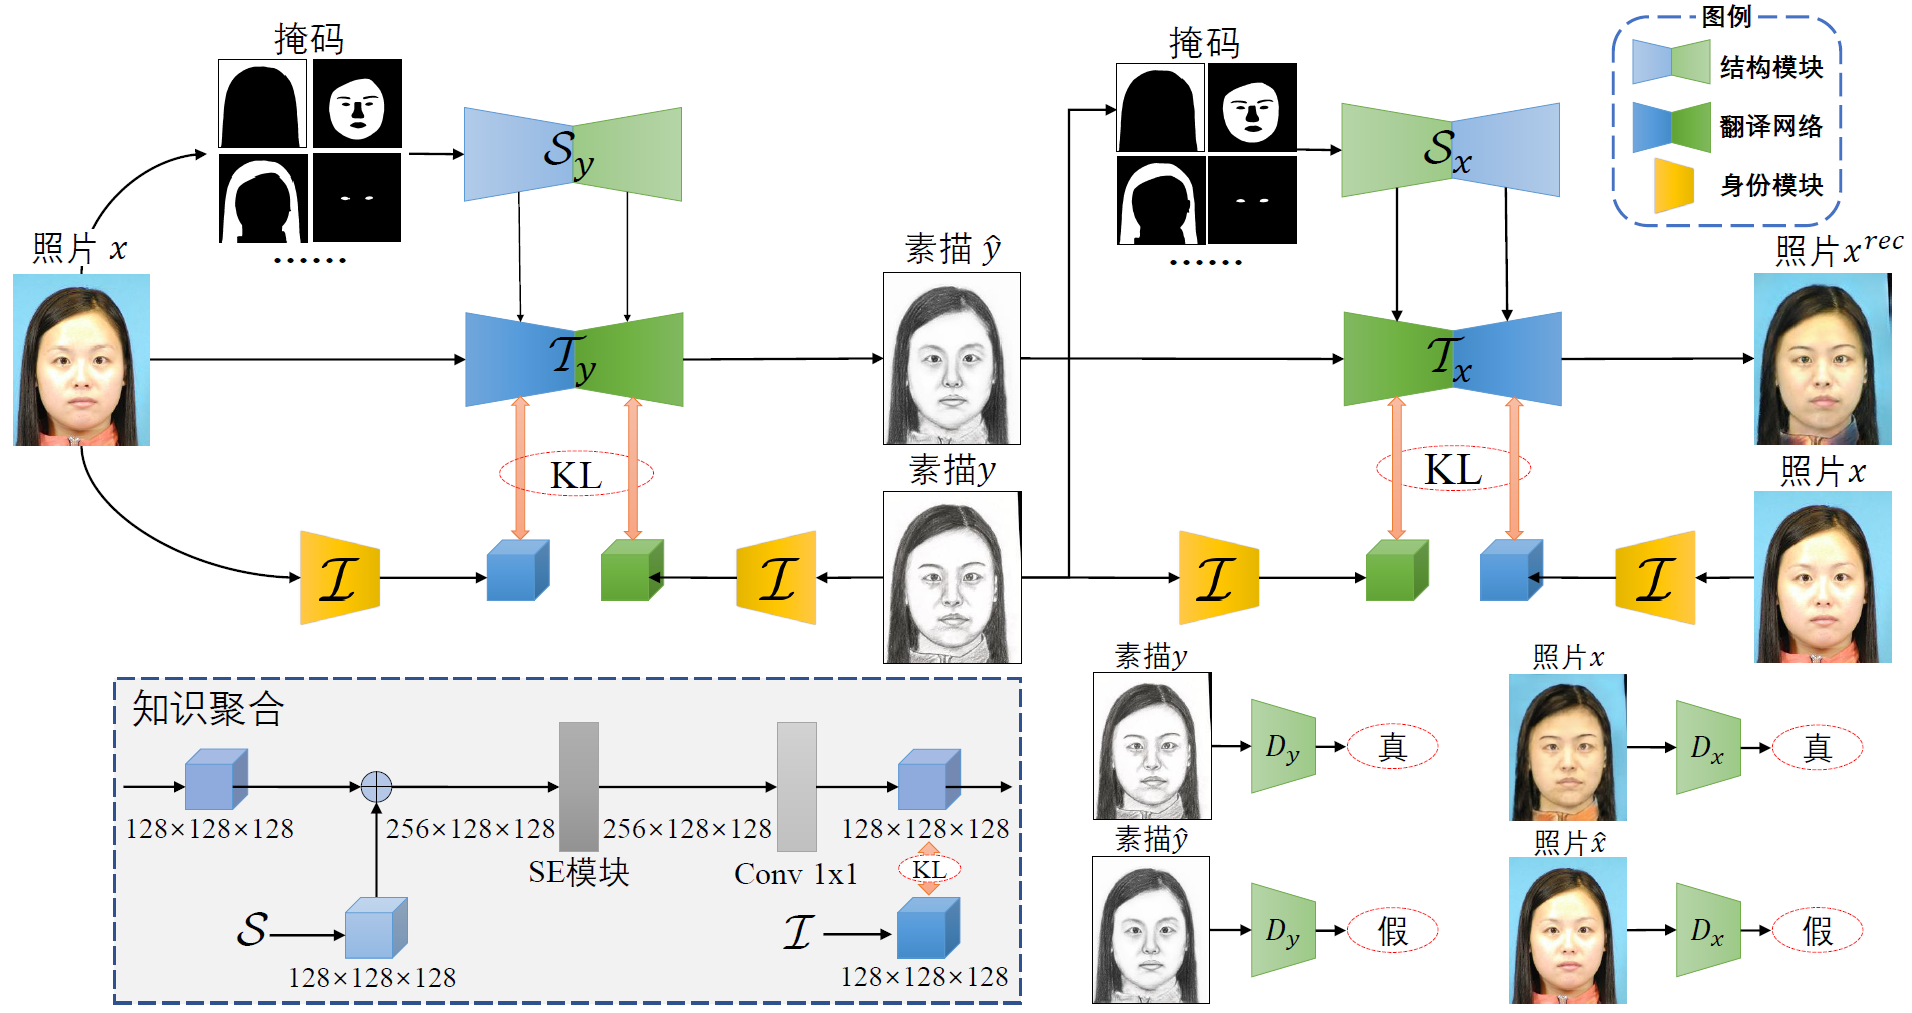 论文《Multi-view Knowledge Ensemble with Frequency Consistency for Cross-Domain Face Translation》被IEEE Transactions on Neural Networks and Learning Systems录用